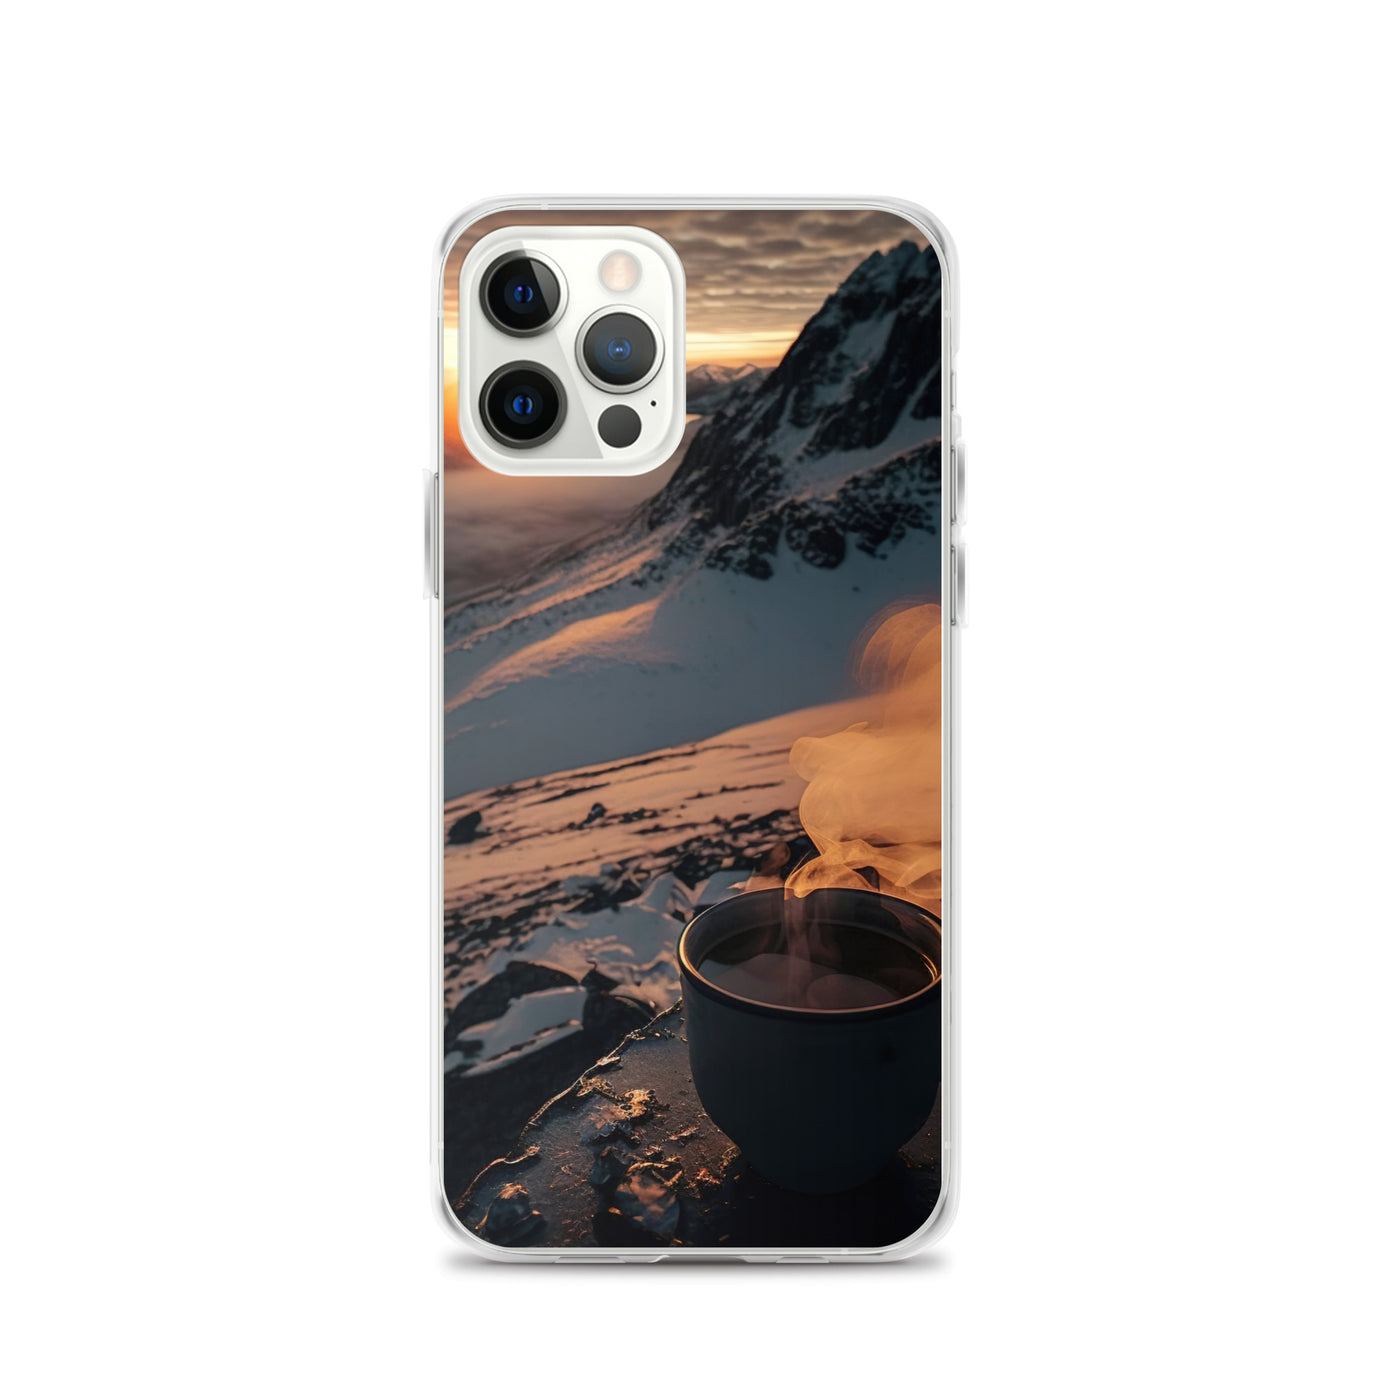 Heißer Kaffee auf einem schneebedeckten Berg - iPhone Schutzhülle (durchsichtig) berge xxx iPhone 12 Pro